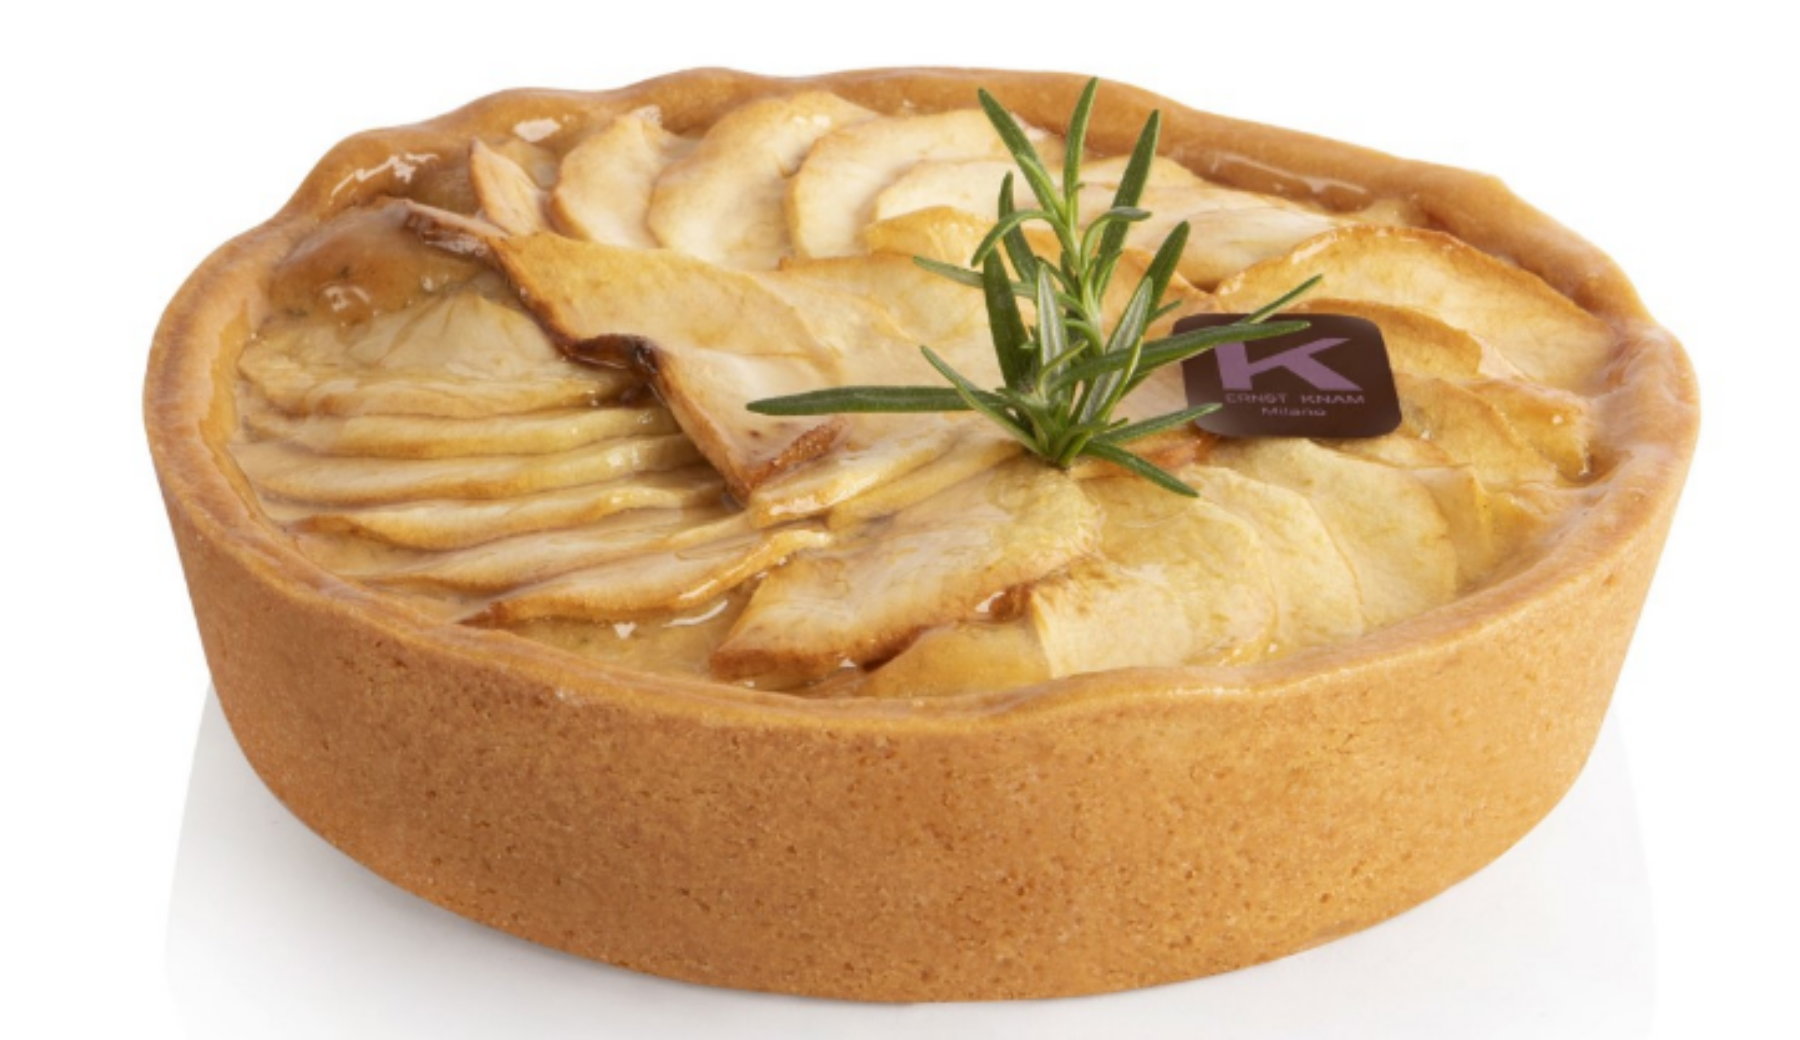 La ricetta della “Crostata con crema frangipane, mele e rosmarino” di Ernst Knam